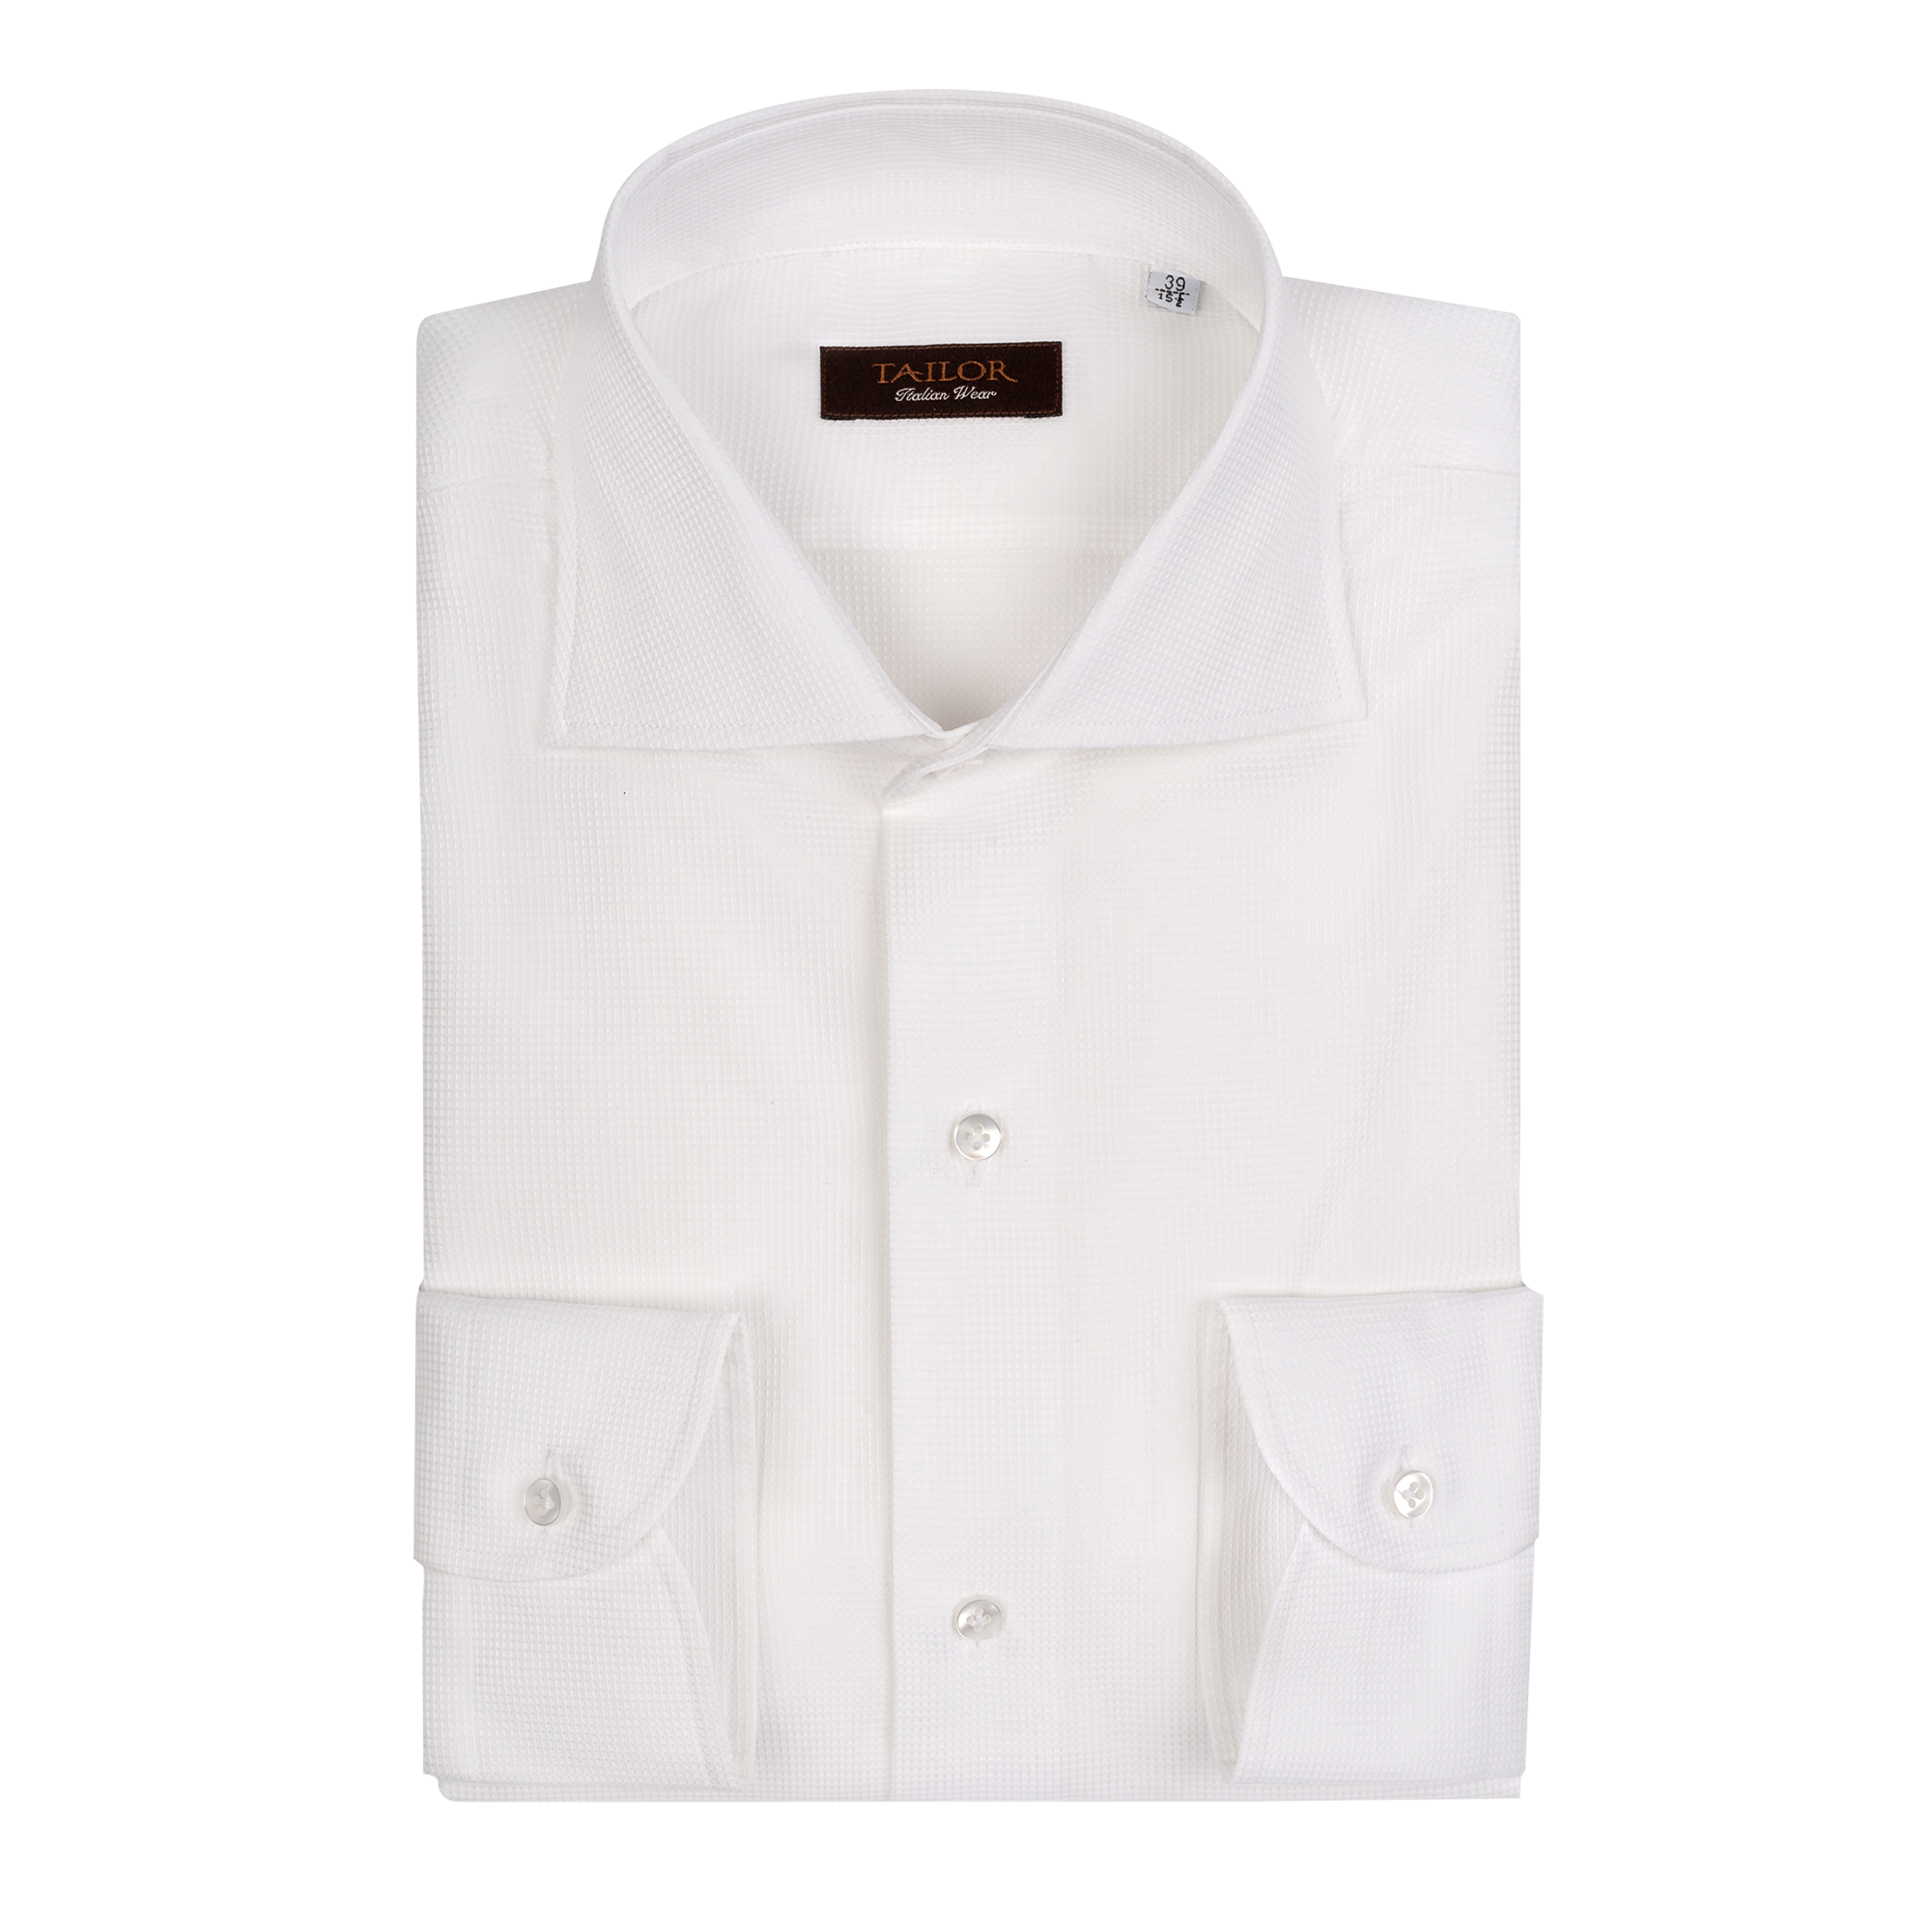 Men's White Pique Cotton Shirt